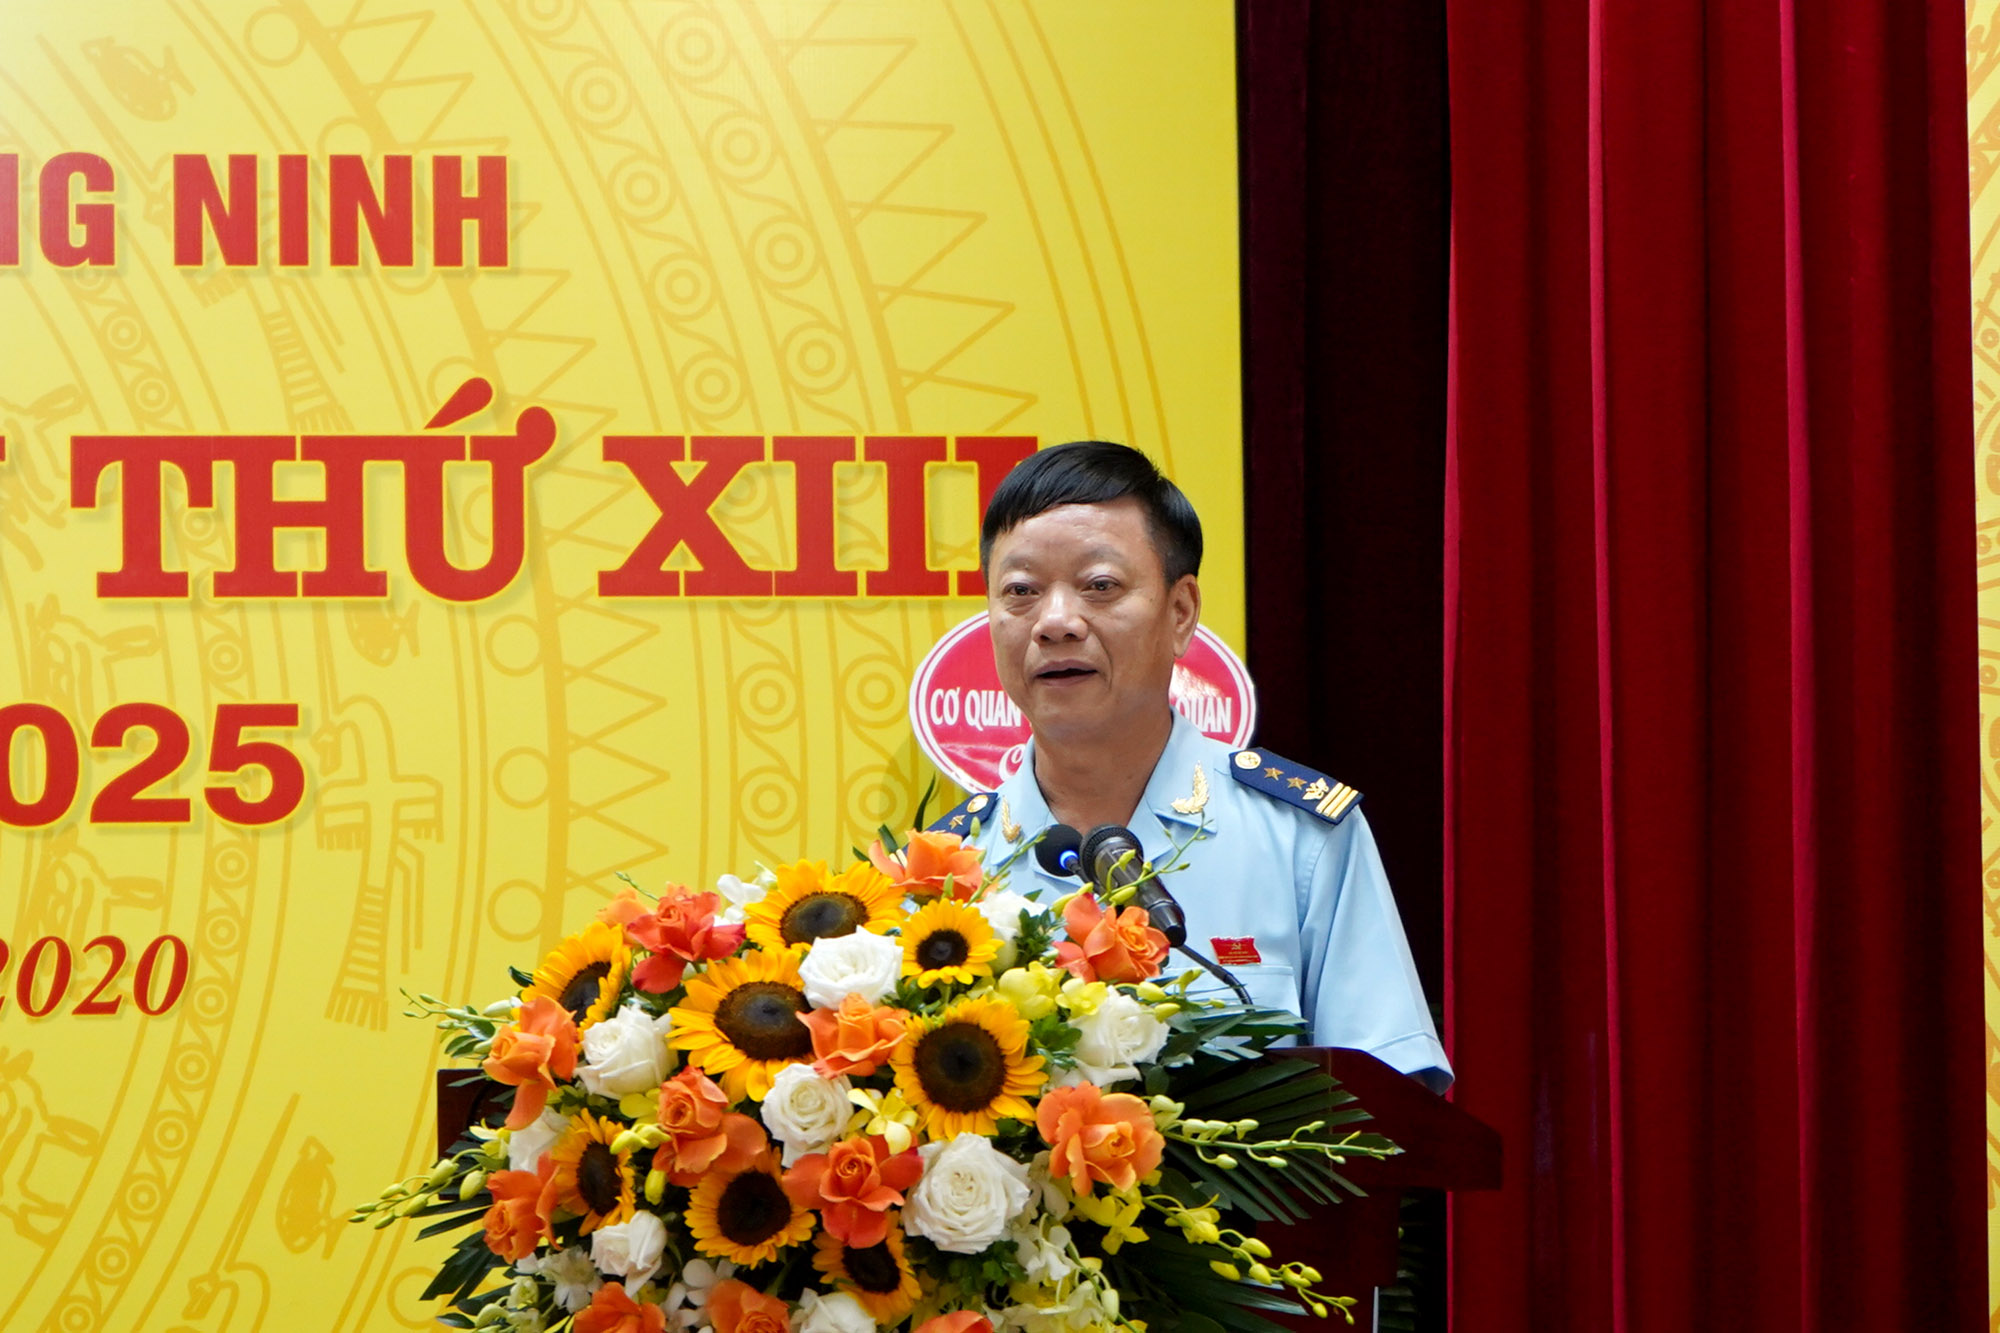 Đồng chí Nguyễn Văn Nghiên, Bí thư Đảng bộ Cục Hải quan Quảng Ninh trình bày báo cáo chính trị tại đại hội.